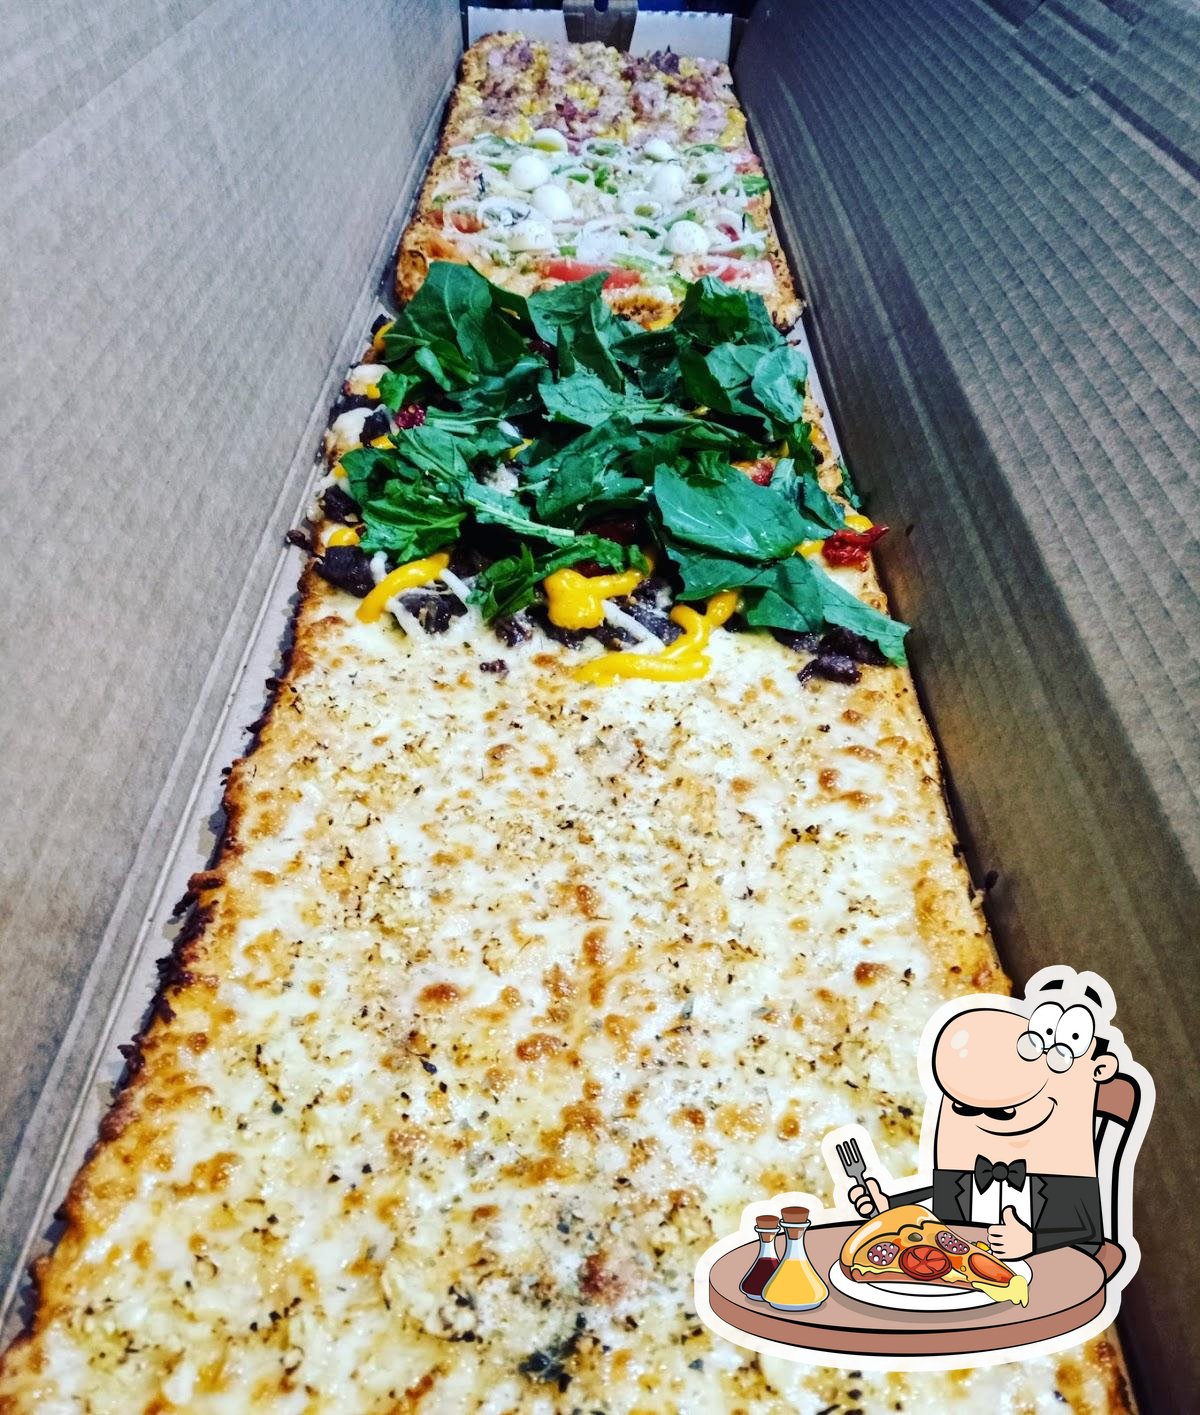 Metro Pizza @metropizzars . 📌Av. Prof. Paula Soares, 347 - Jardim